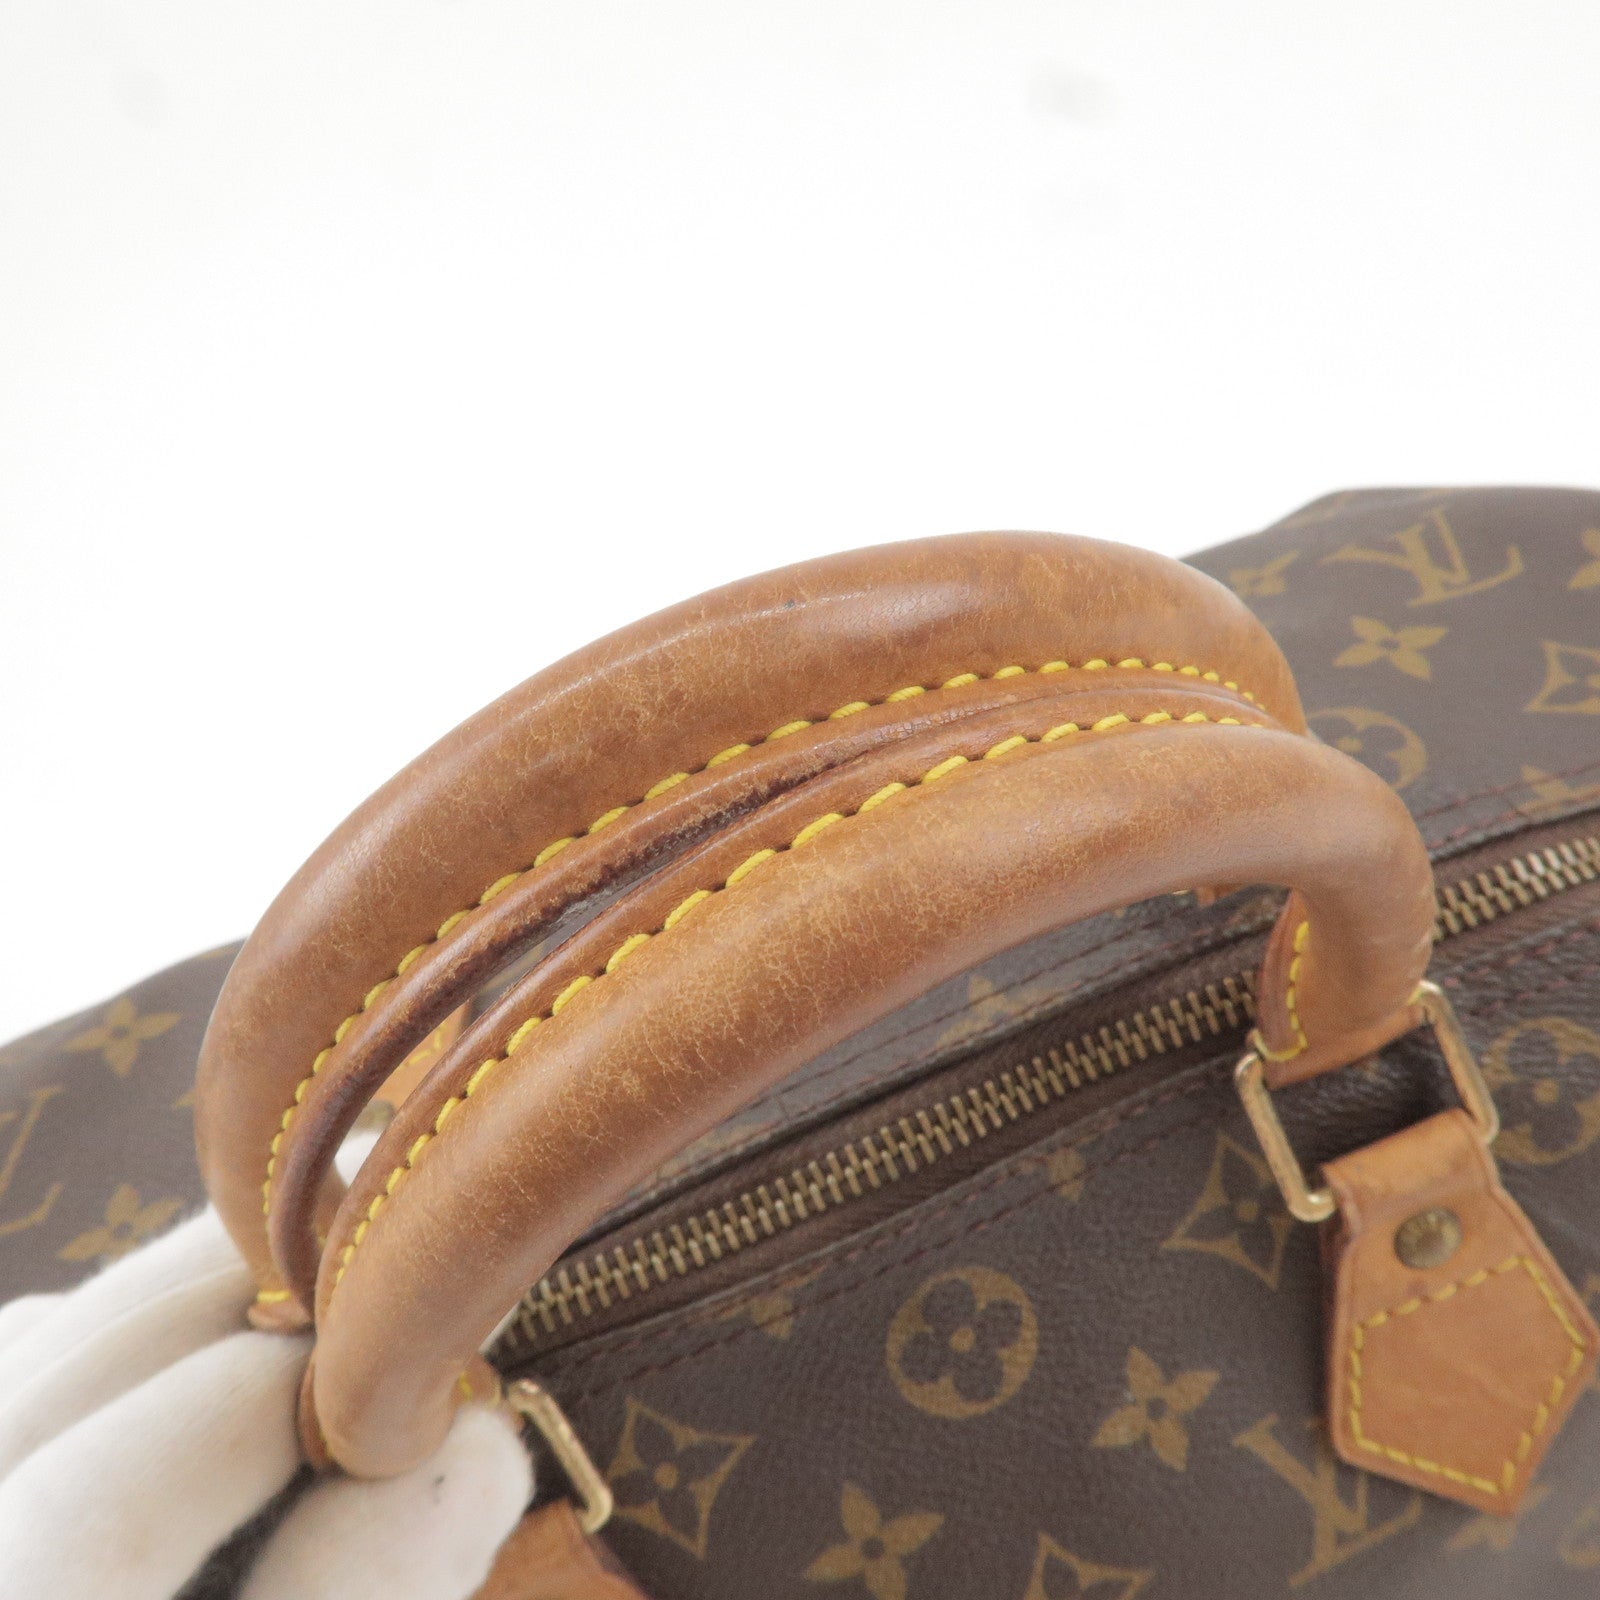 Louis Vuitton Louis Vuitton Croisette PM Brown Epi Leather Handbag